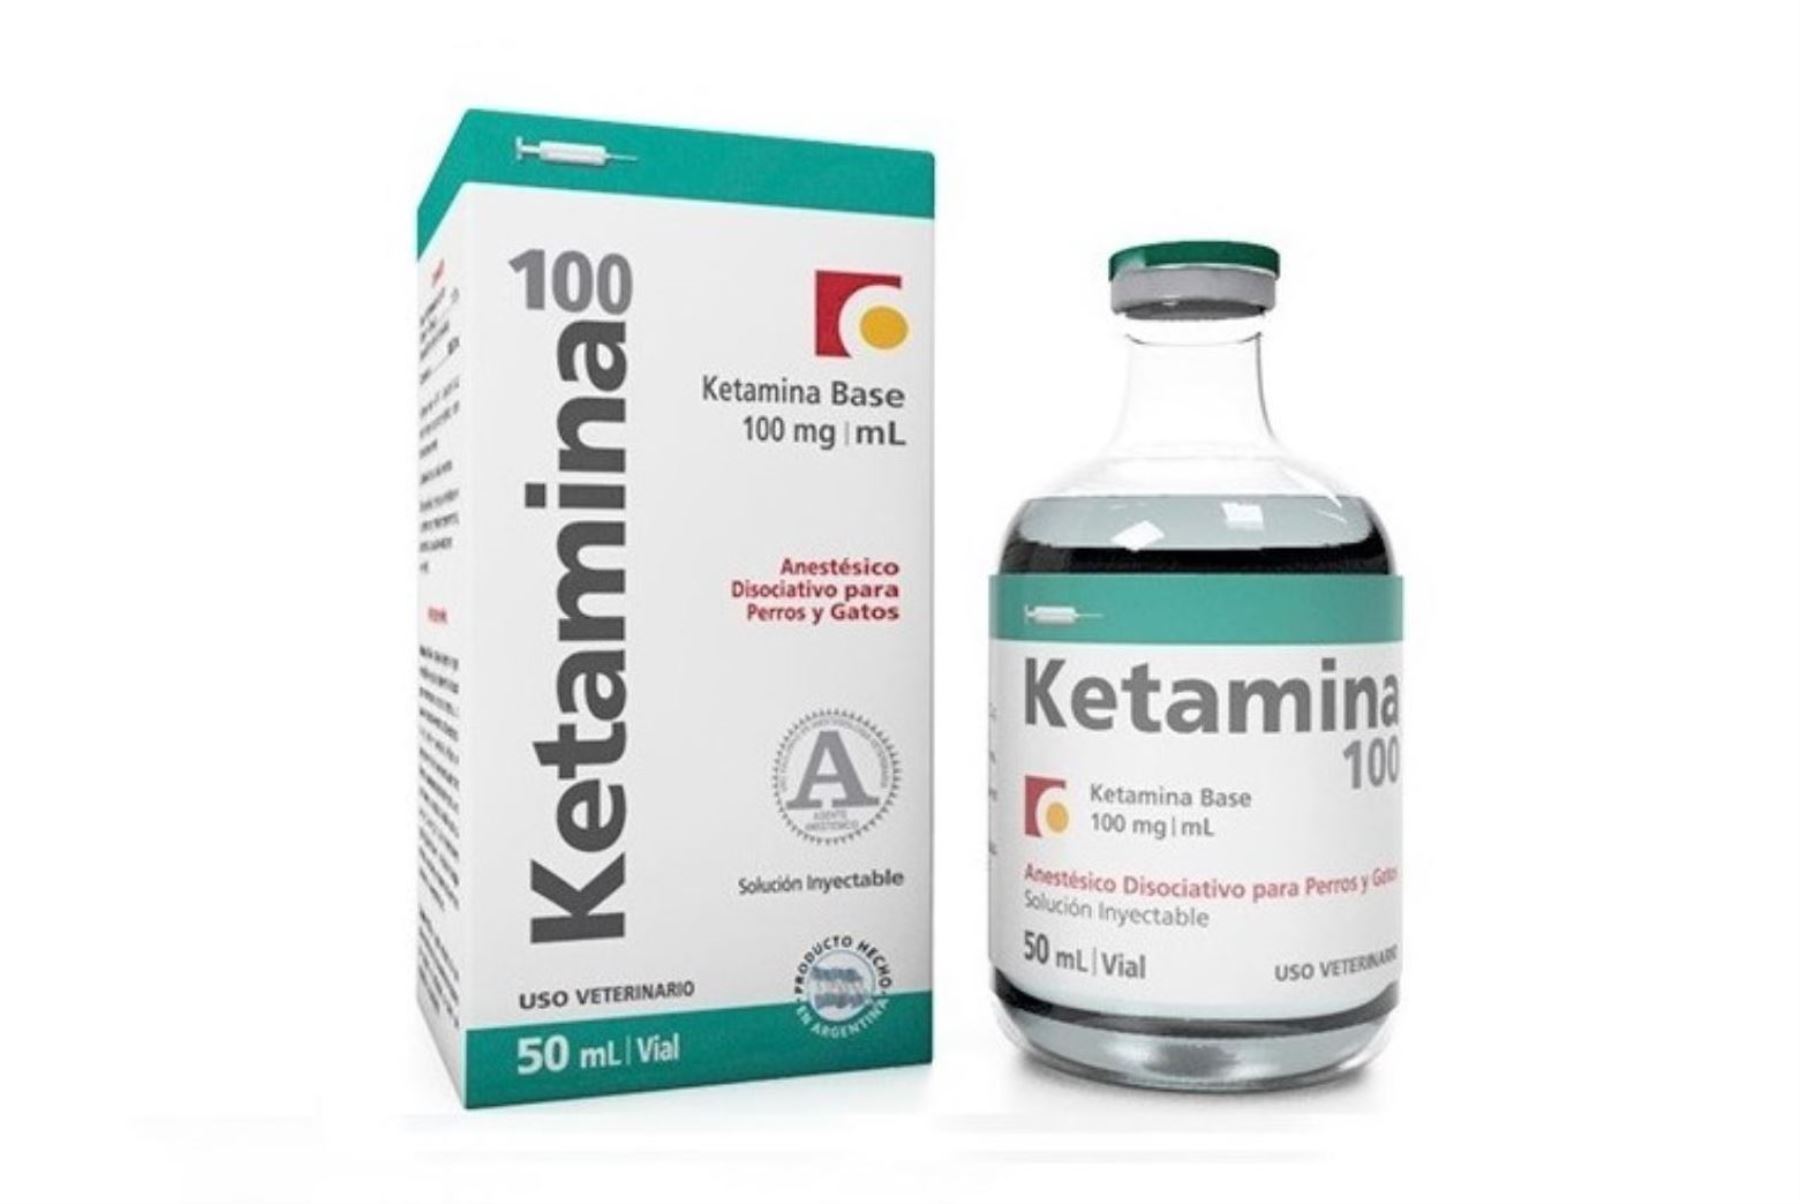 Cedro alerta sobre consumo de ketamina entre adolescentes en medio de la cuarentena. Foto: ANDINA/Internet.